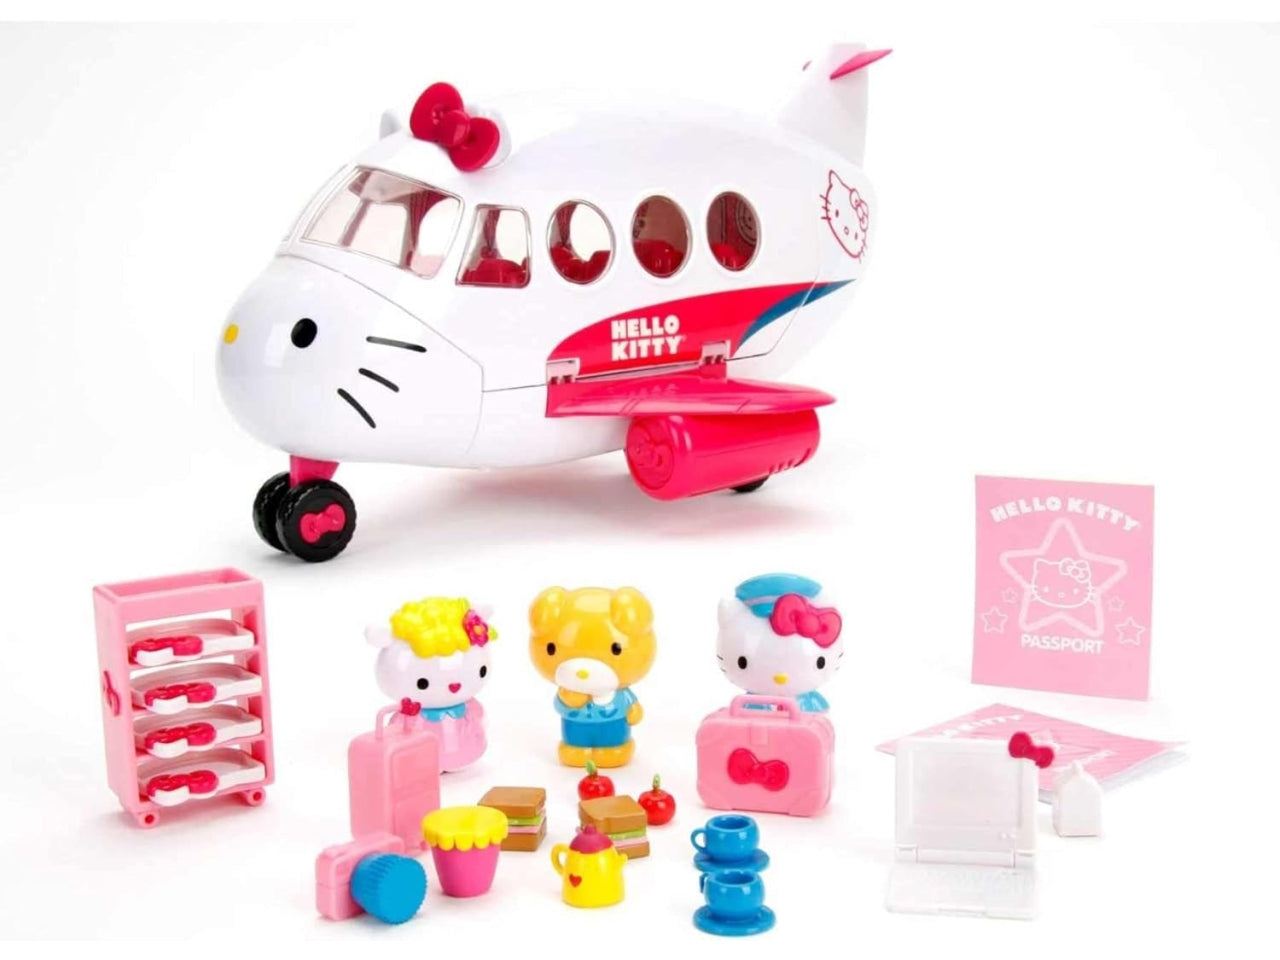 Aereo Hello Kitty con 3 personaggi e accessori inclusi, per bambini 4+ anni